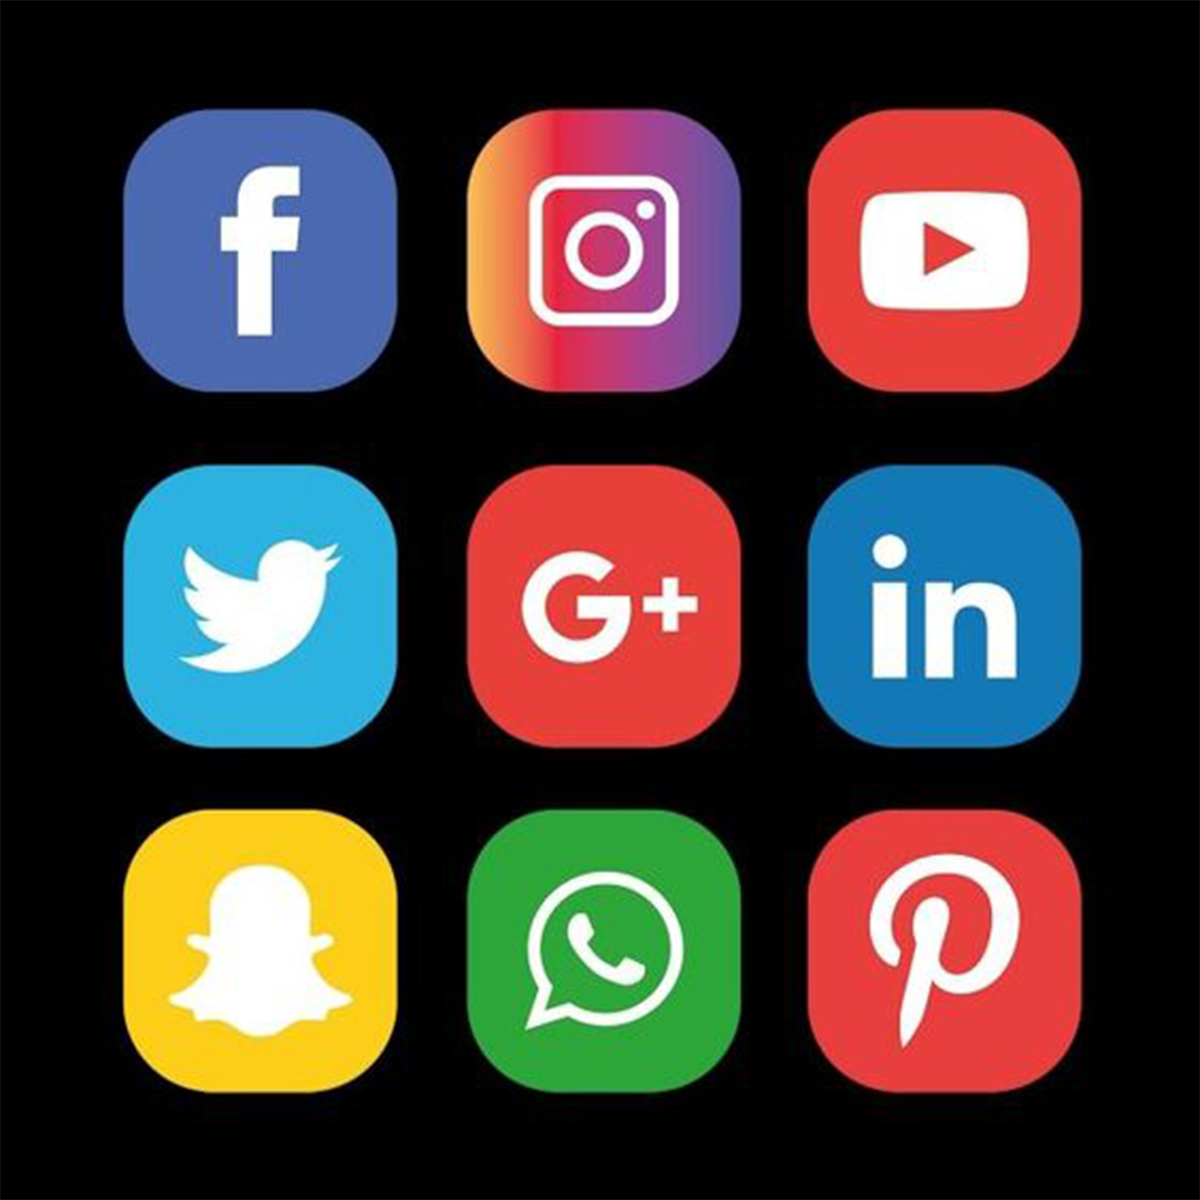 Sociale media‑linkknoppen